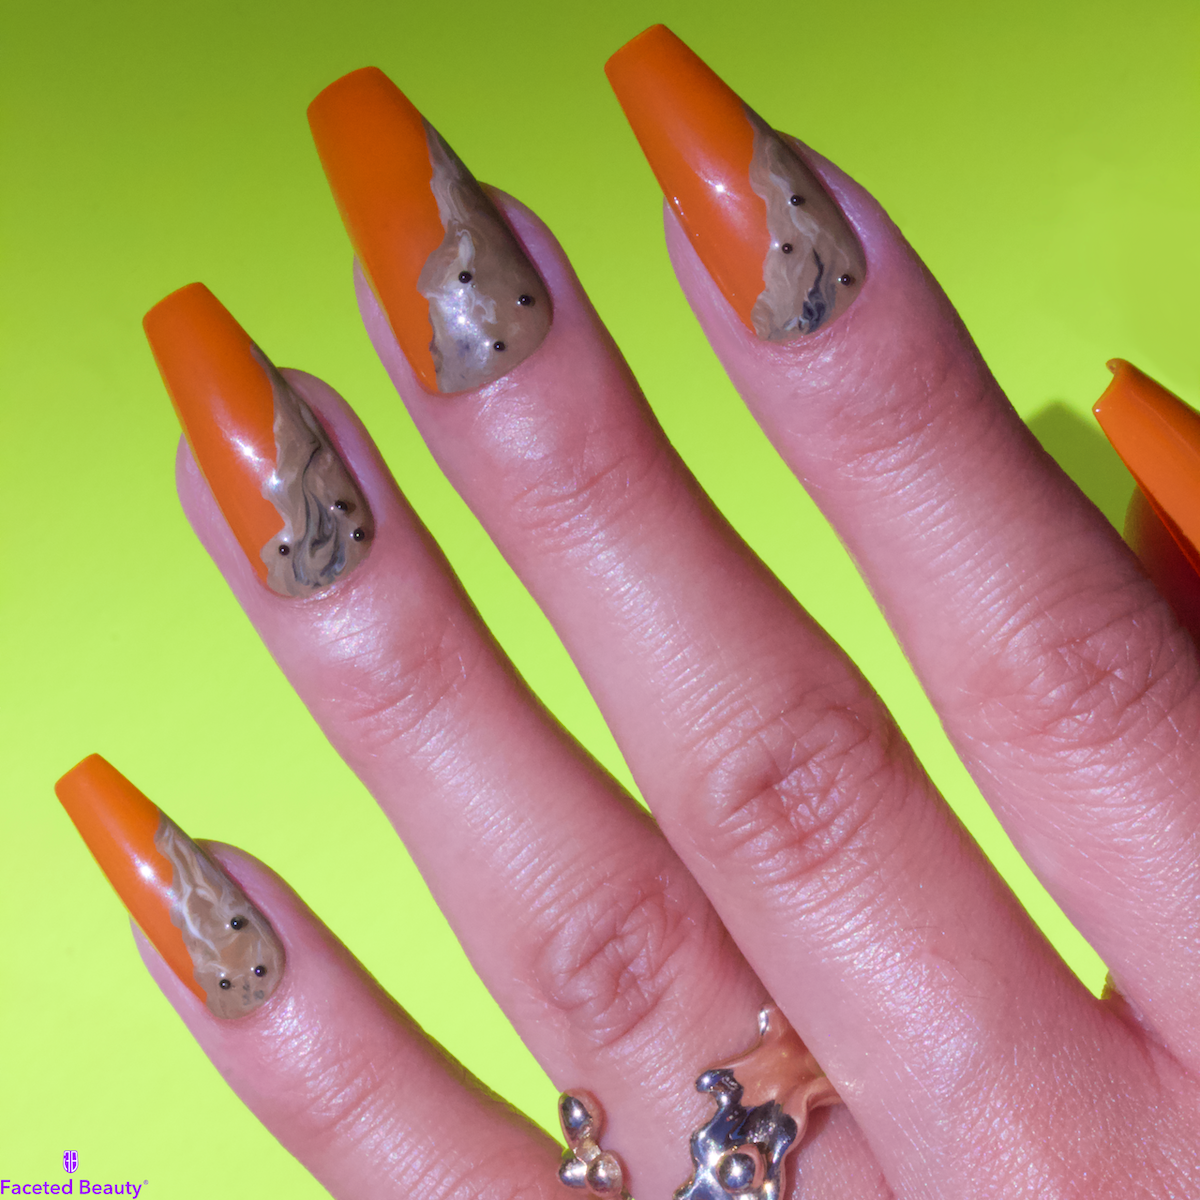 Orange coffin-shaped nails with brown sugar milk tea in bottom half